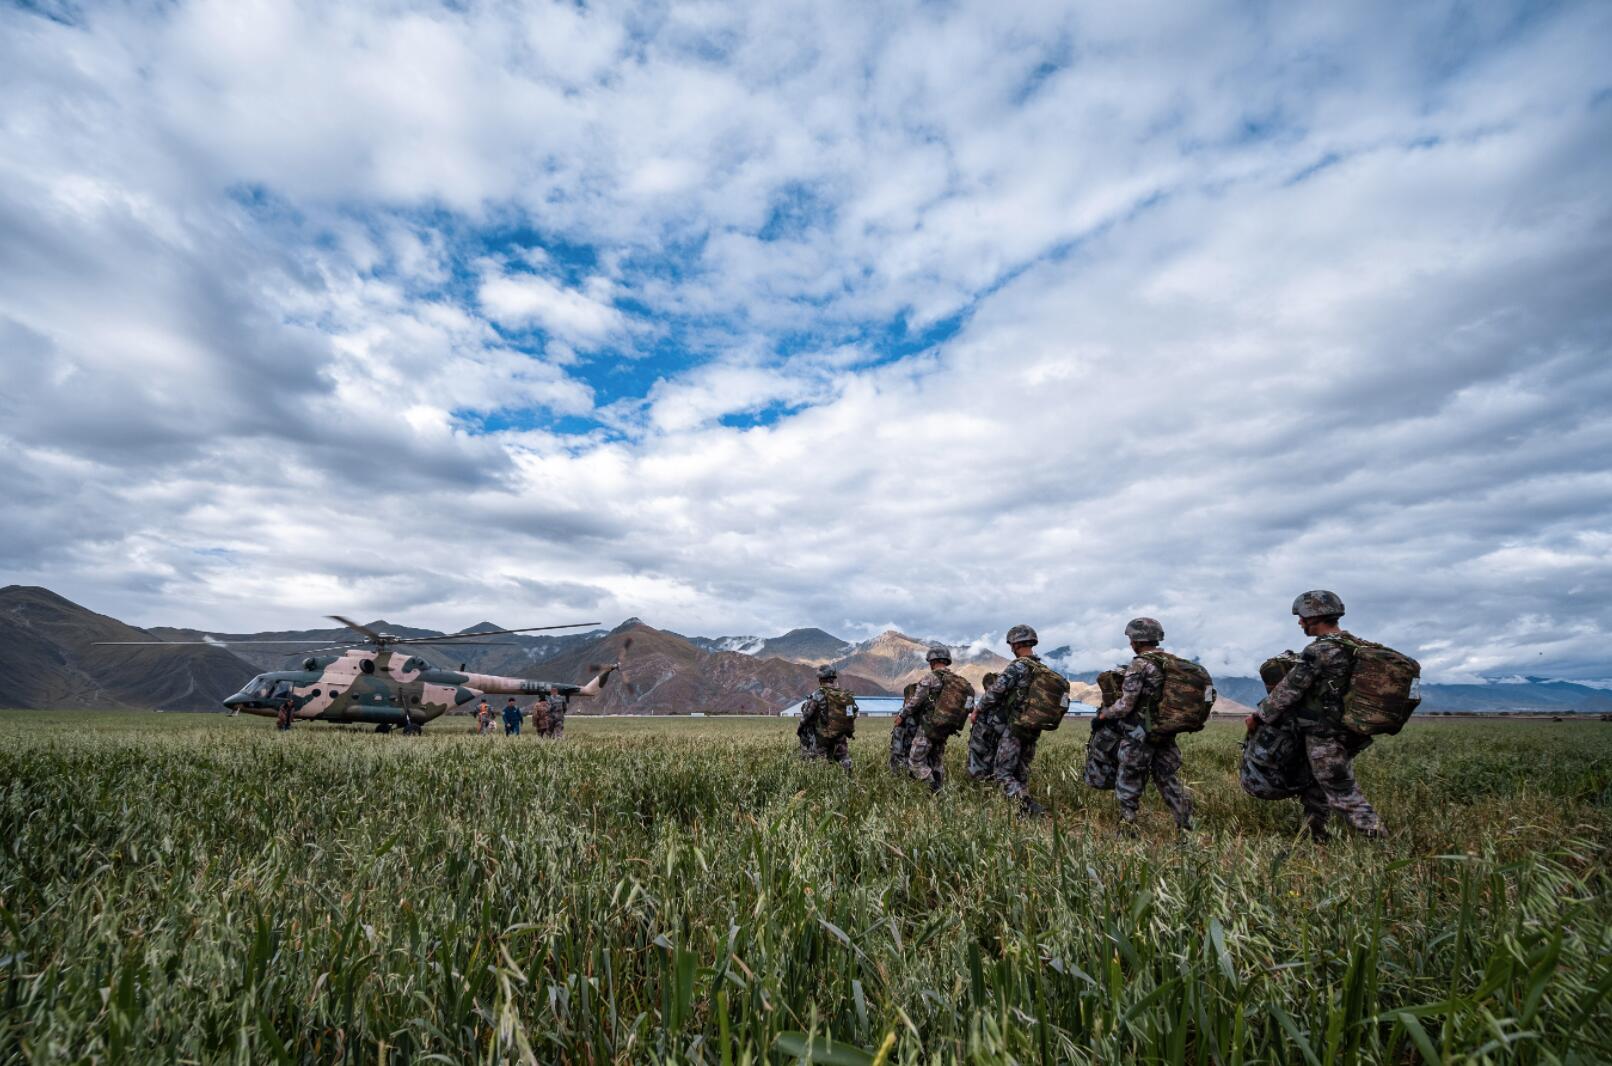 中國人民解放軍西藏軍區某特戰旅與某陸航旅近日聯合在海拔4000多米的陌生地域完成高原首次低空攜裝傘降訓練，進一步提升部隊高原區域立體攻防、遠程滲透、縱深打擊能力。參訓隊員除了20多公斤的傘具以外，每人還攜帶自身武器以及相關補給等裝備超過30公斤。日前，該旅已有千餘人次完成高海拔傘降訓練，數十個作戰單元實現高原攜裝跳傘。圖為9月11日，攜裝跳傘參訓隊員依次登機。中新社